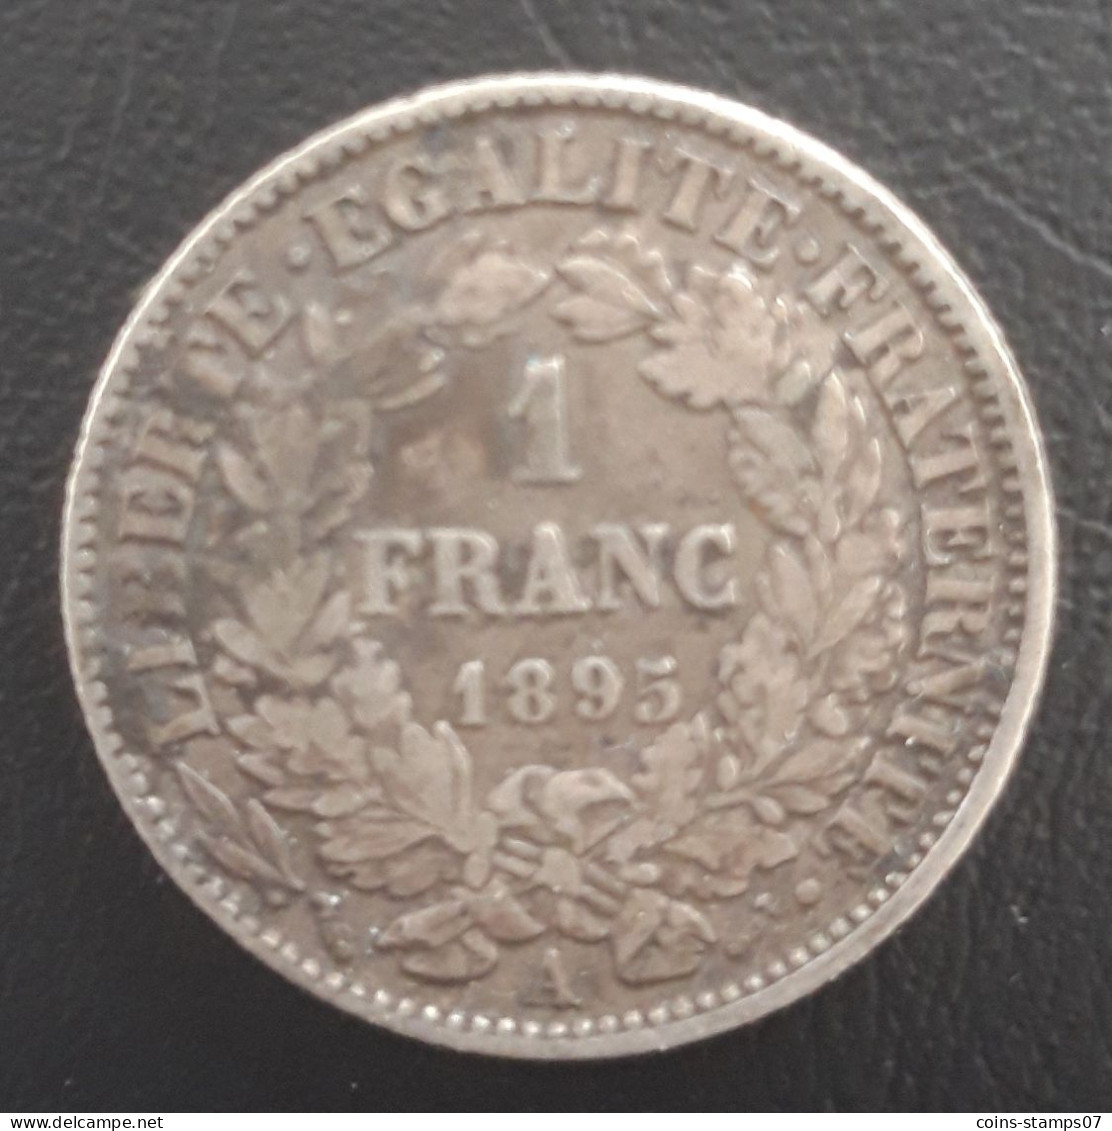 France - 1 Franc Cérès 1895 A - 1 Franc